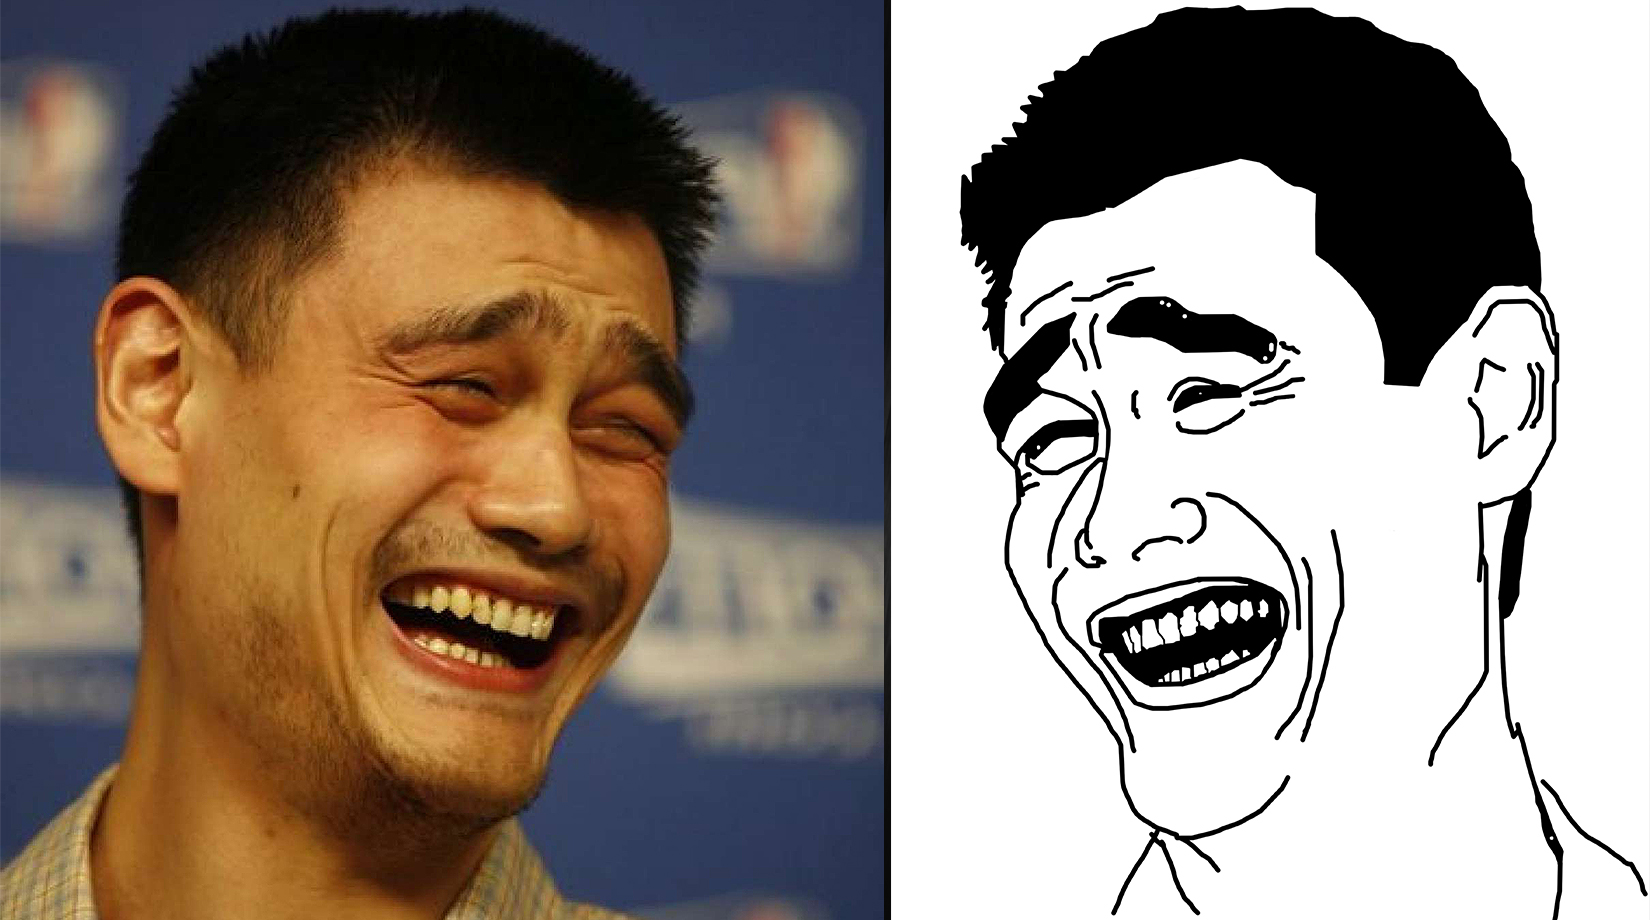 Funny Meme Yao Ming Meme Face Rage Meme To Be Continued Meme Meme The